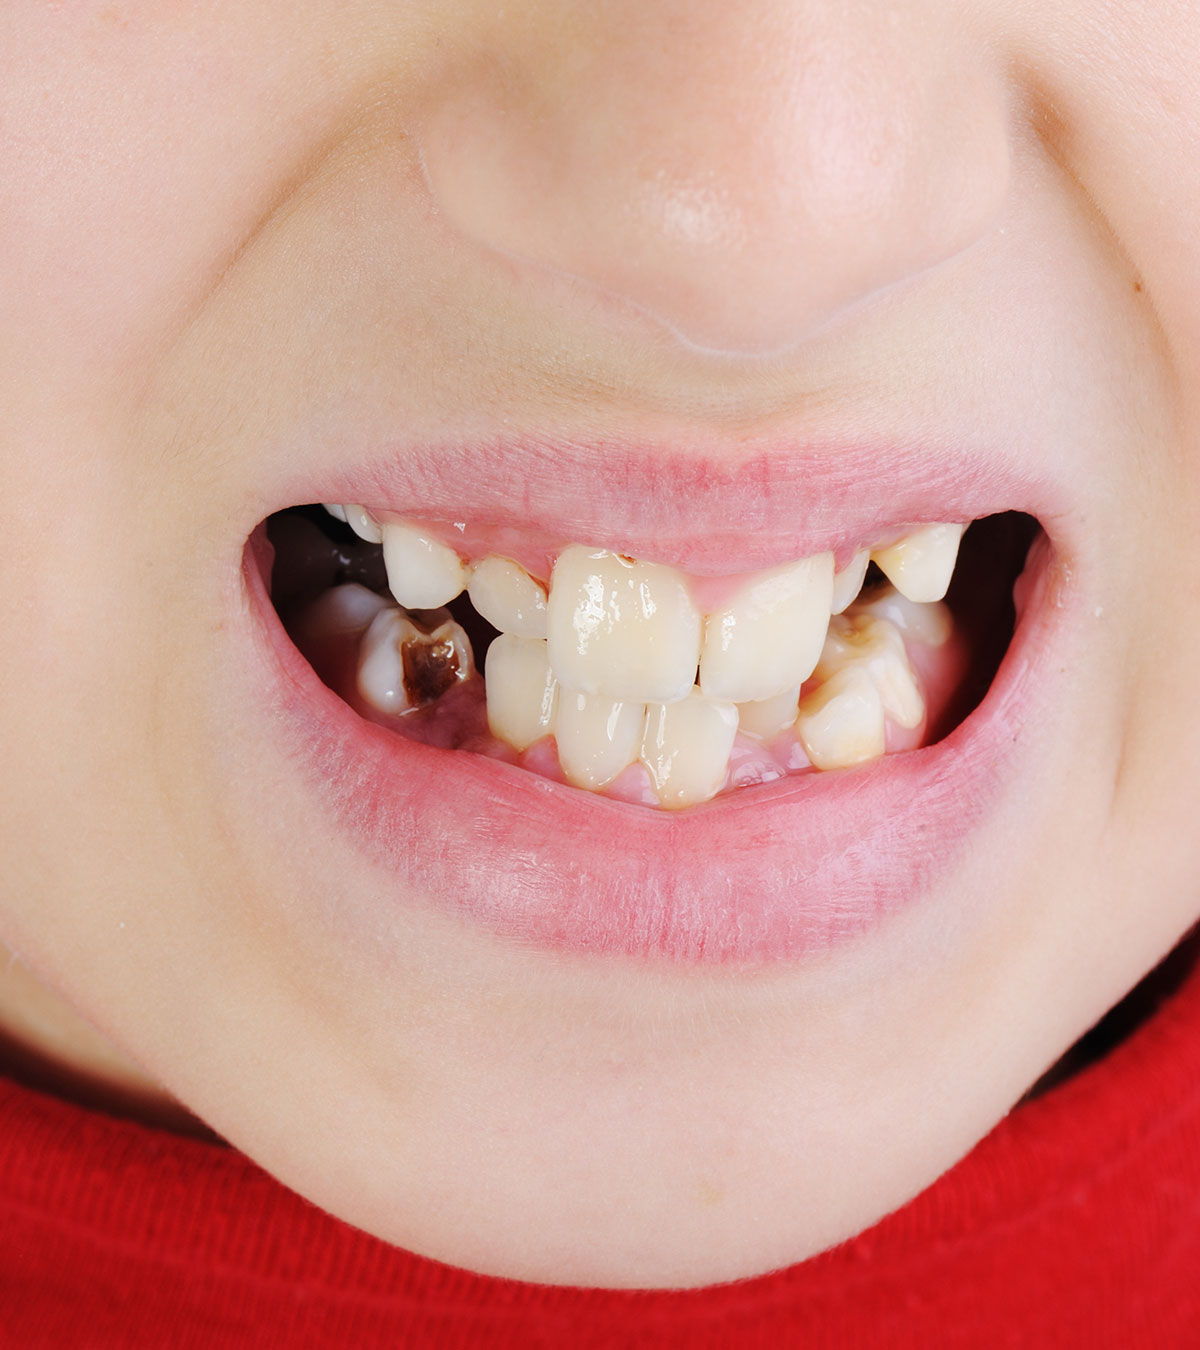 儿童牙齿变色:成因、治疗、补救及预防